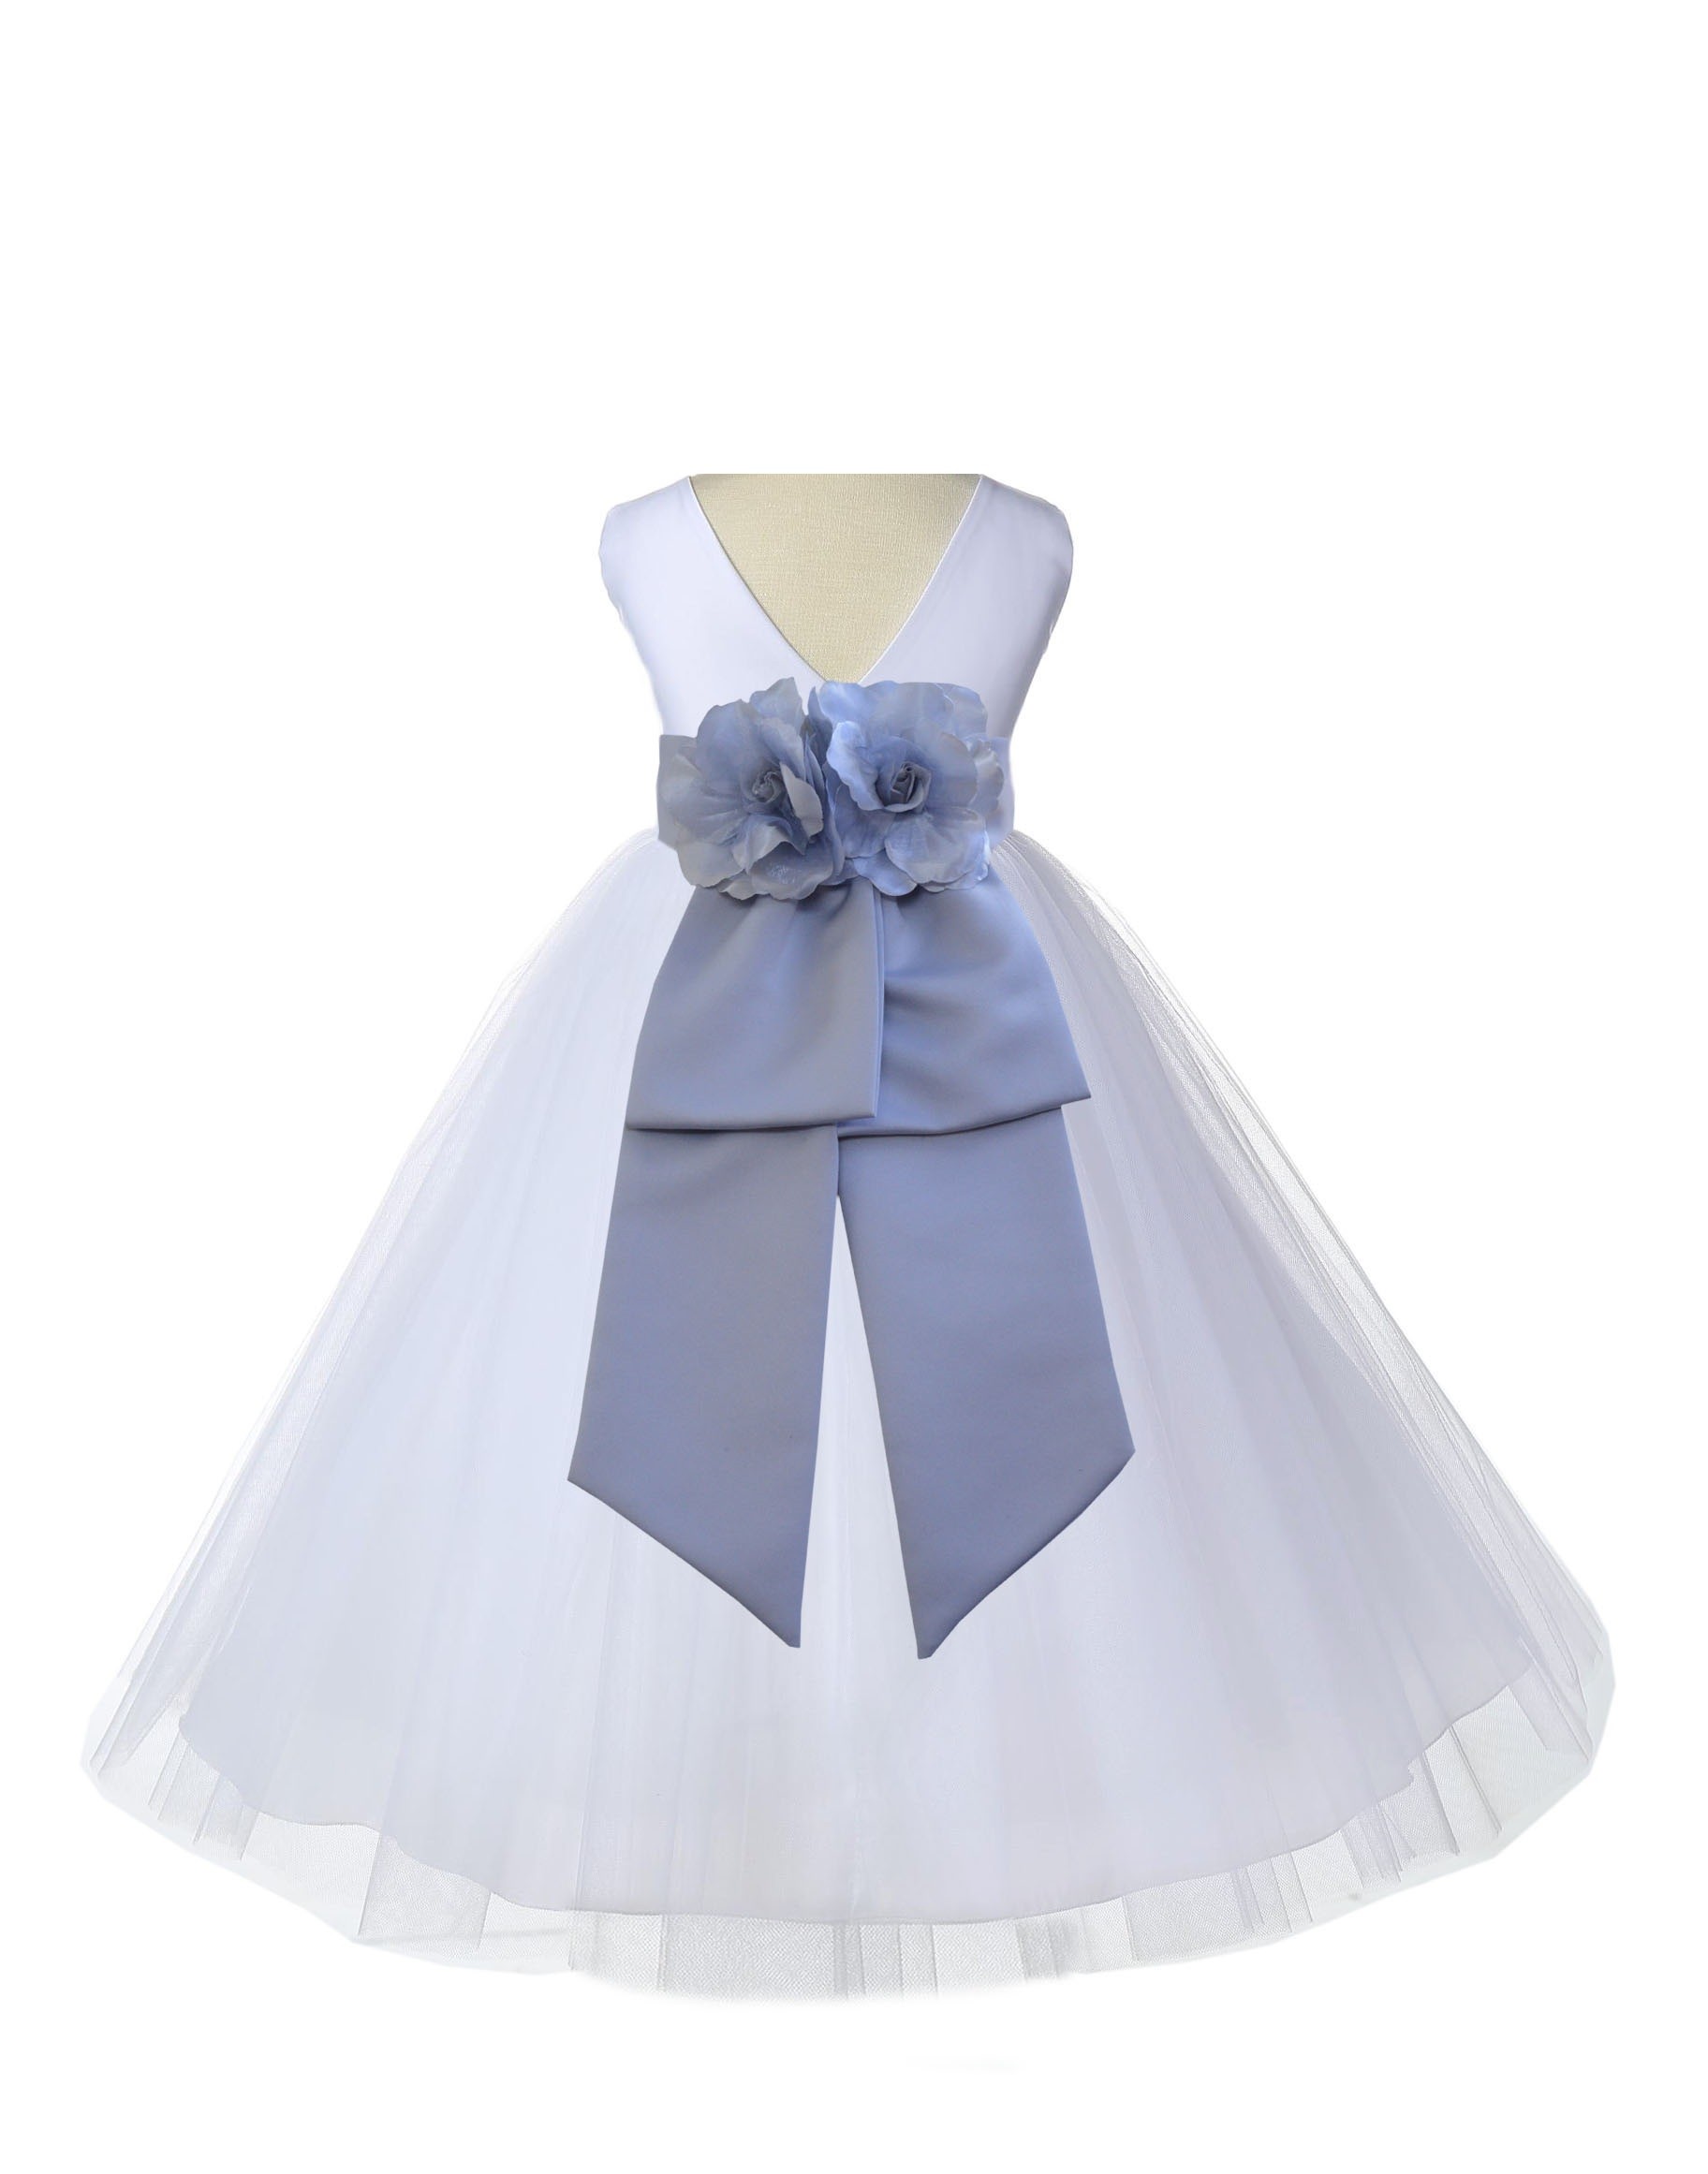 V-Neck Tulle White/Silver Flower Girl Dress Wedding Pageant 108